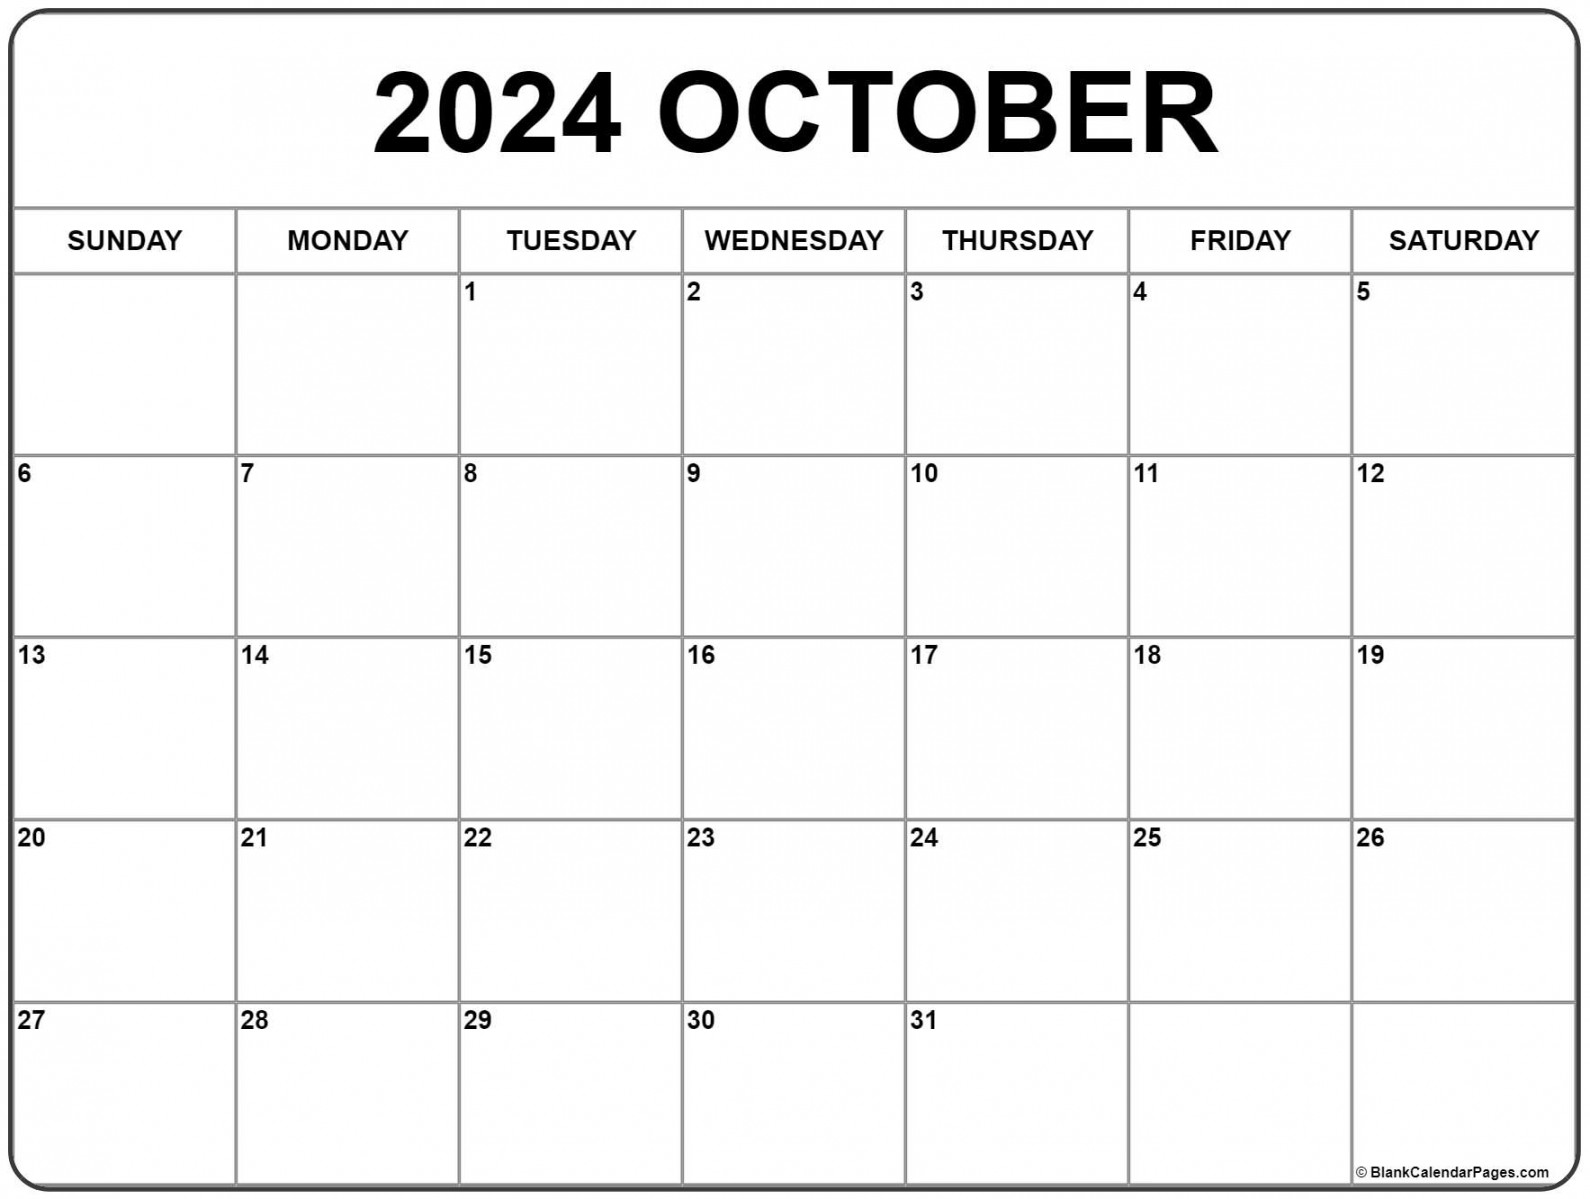 October calendar free printable calendar